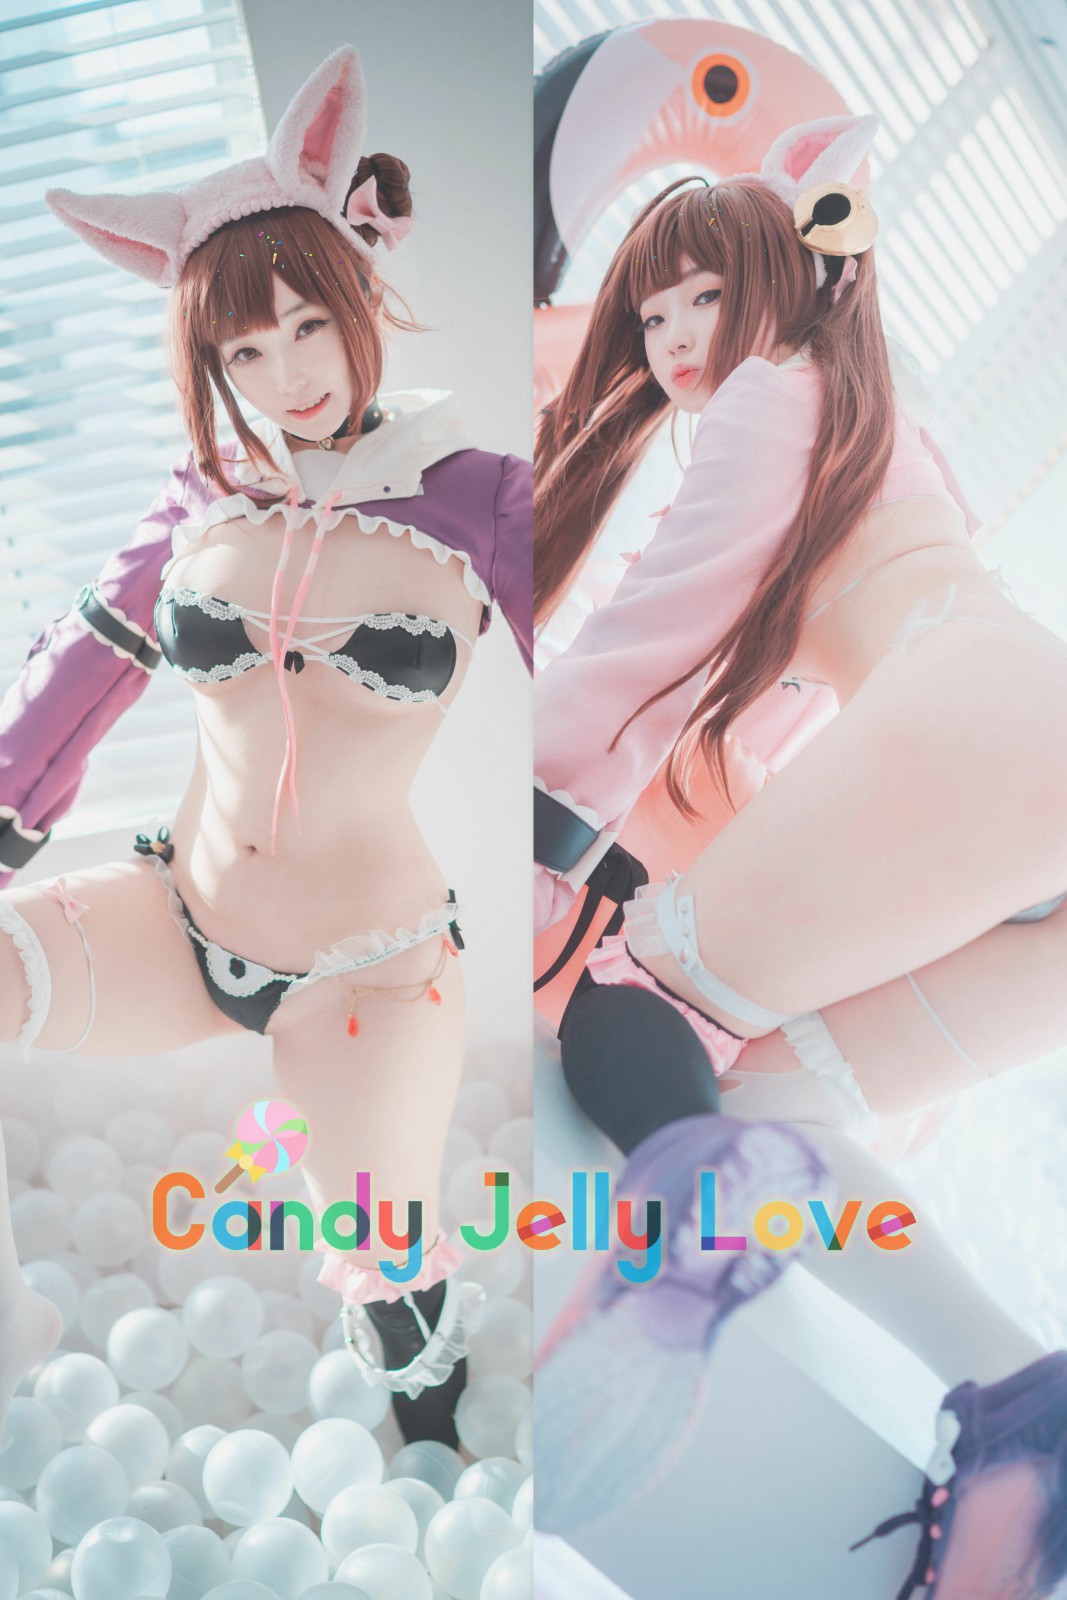 [DJAWA] BamBi - Candy Jelly Love 写真套图 第1张